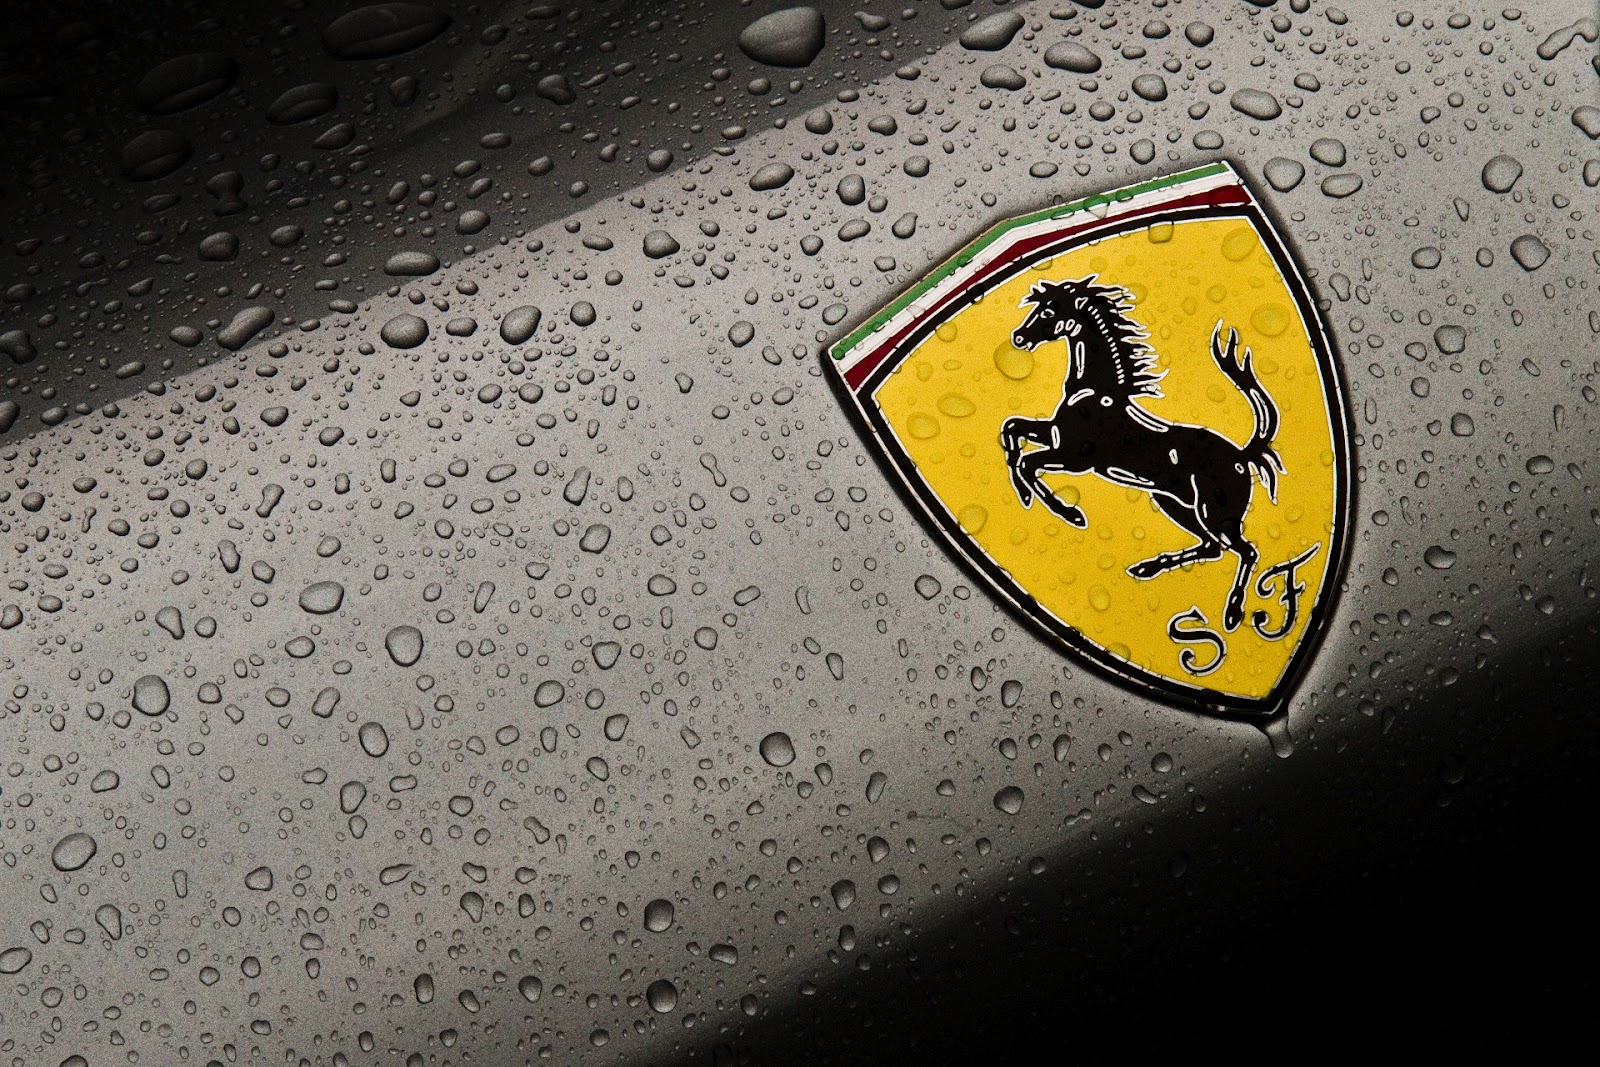  achtergrond met gele Ferrari logo HD Ferrari wallpaper foto 1600x1067